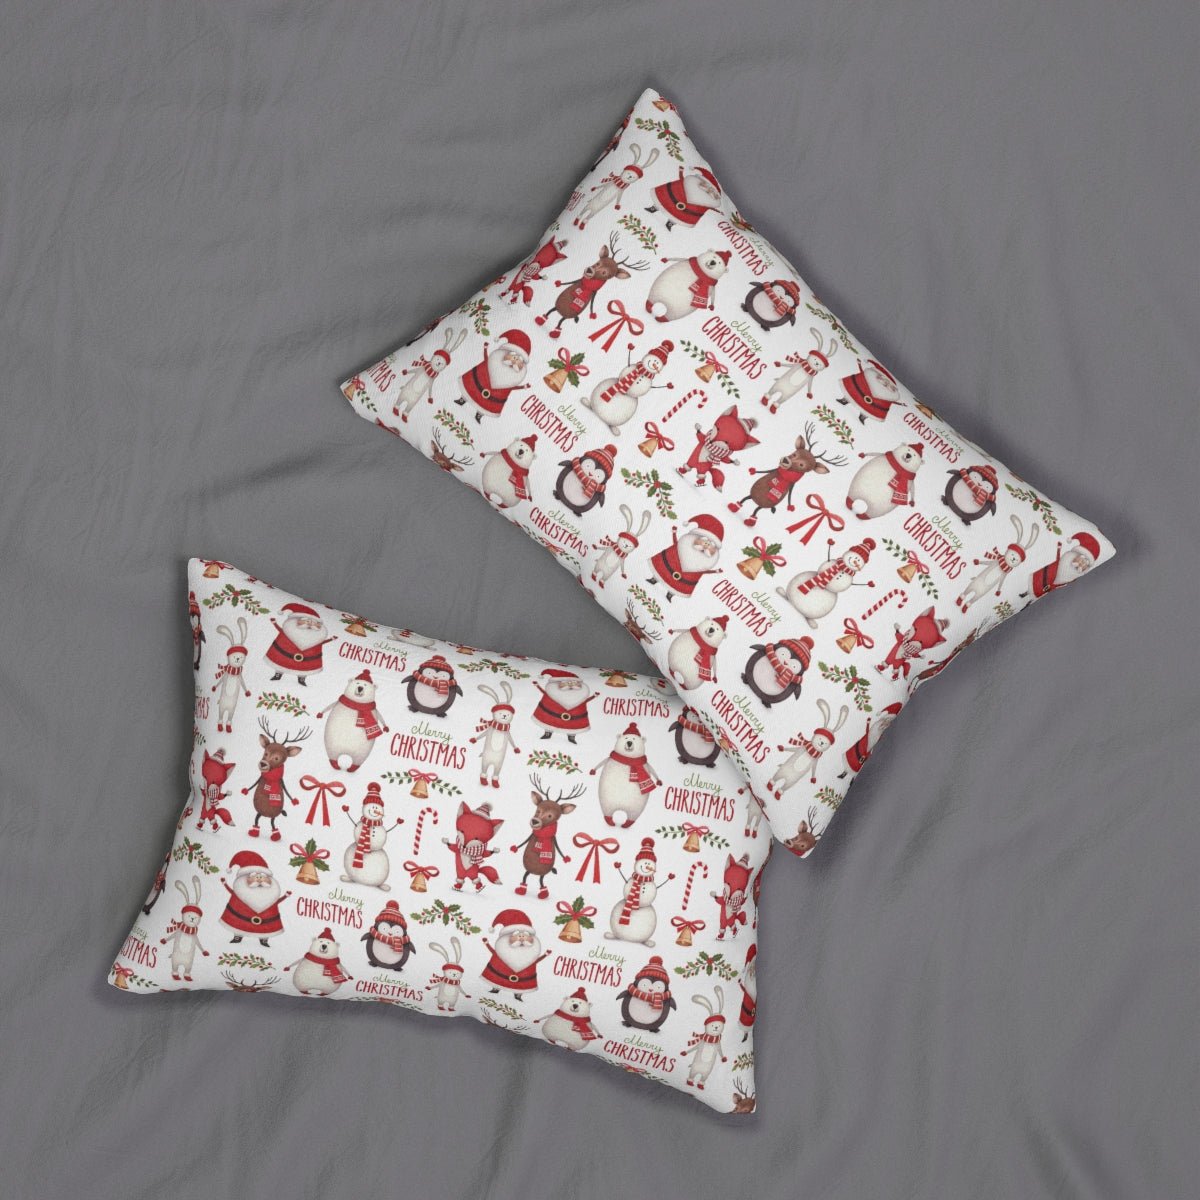 Christmas Santa Spun Polyester Lumbar Pillow - Puffin Lime